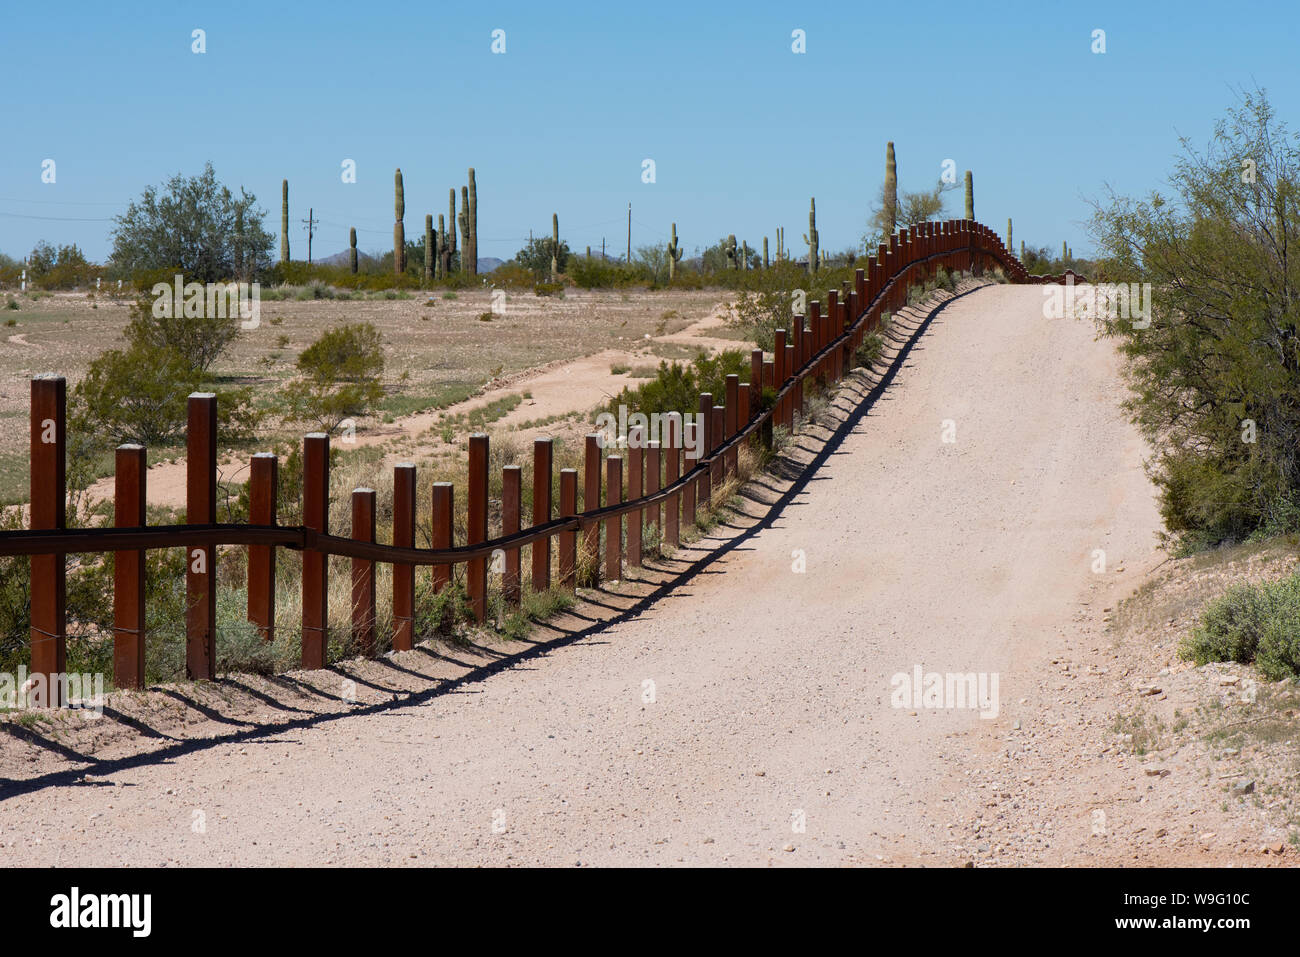 Une route passe à côté de la frontière entre le Mexique et les États-Unis dans la région de Quitobaquito Springs, orgue Pipe Cactus National Monument, Arizona Banque D'Images